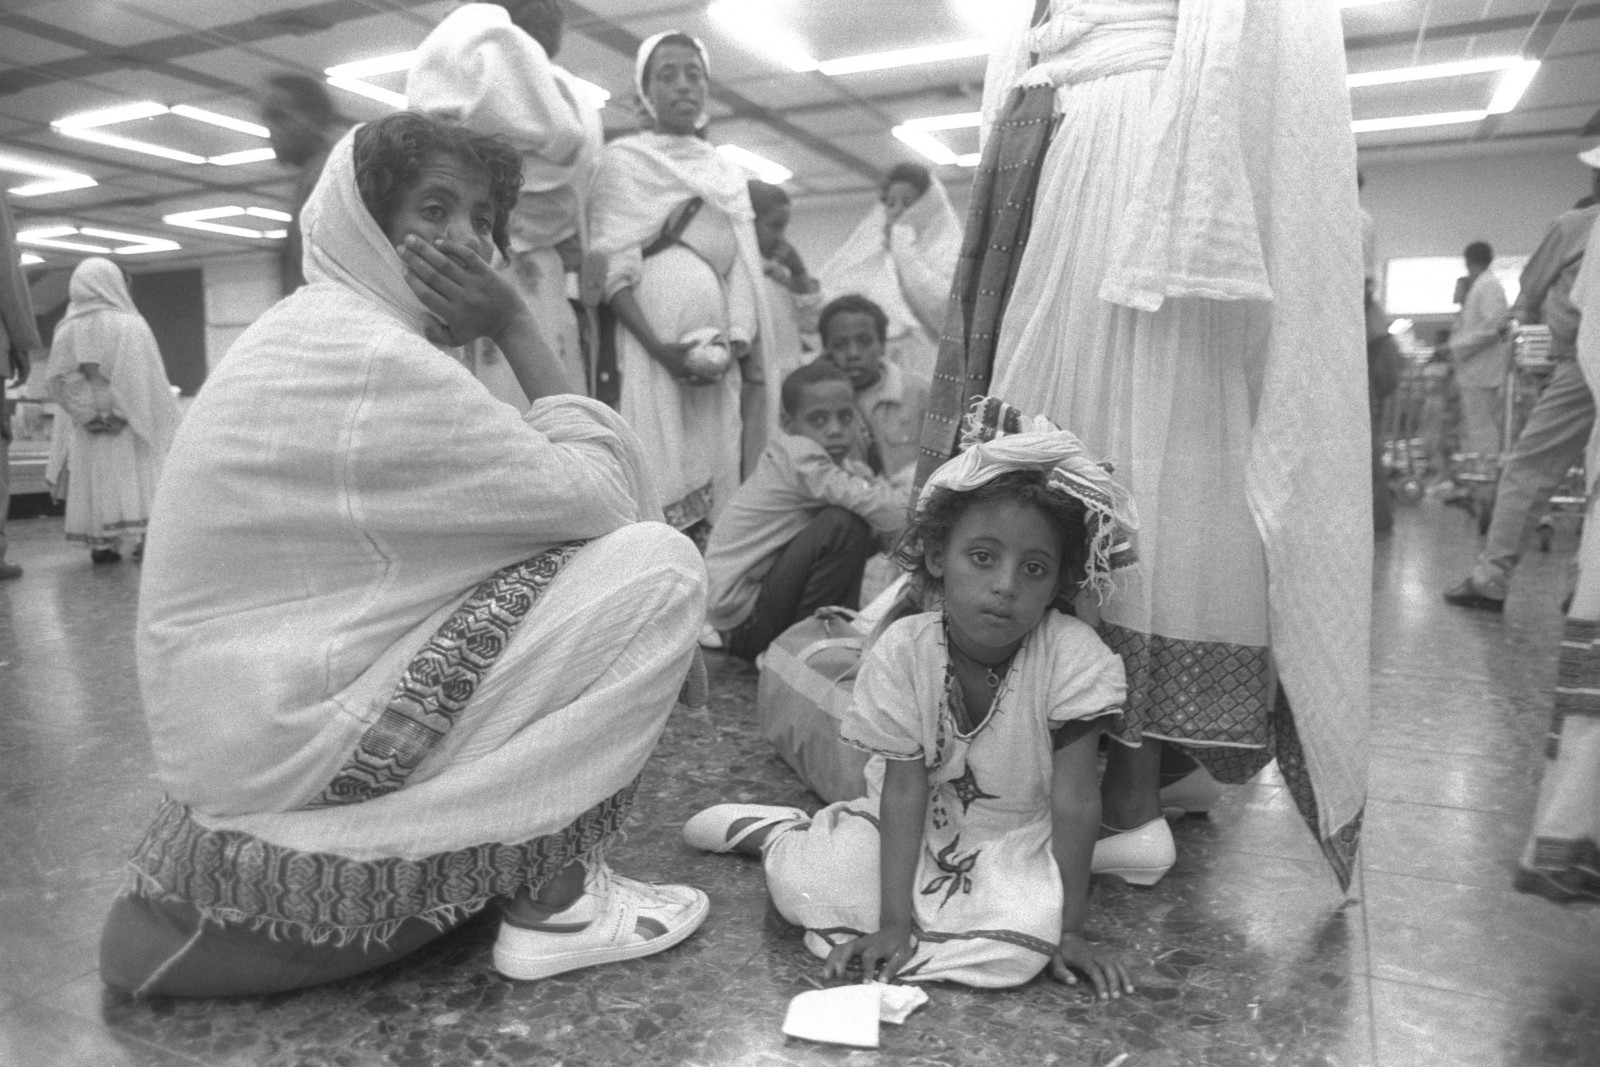 עולים מאתיופיה בהגיעם לנמל התעופה בן-גוריון. מבצע שלמה, 1990 (צילום: נתן אלפרט / לע״מ).